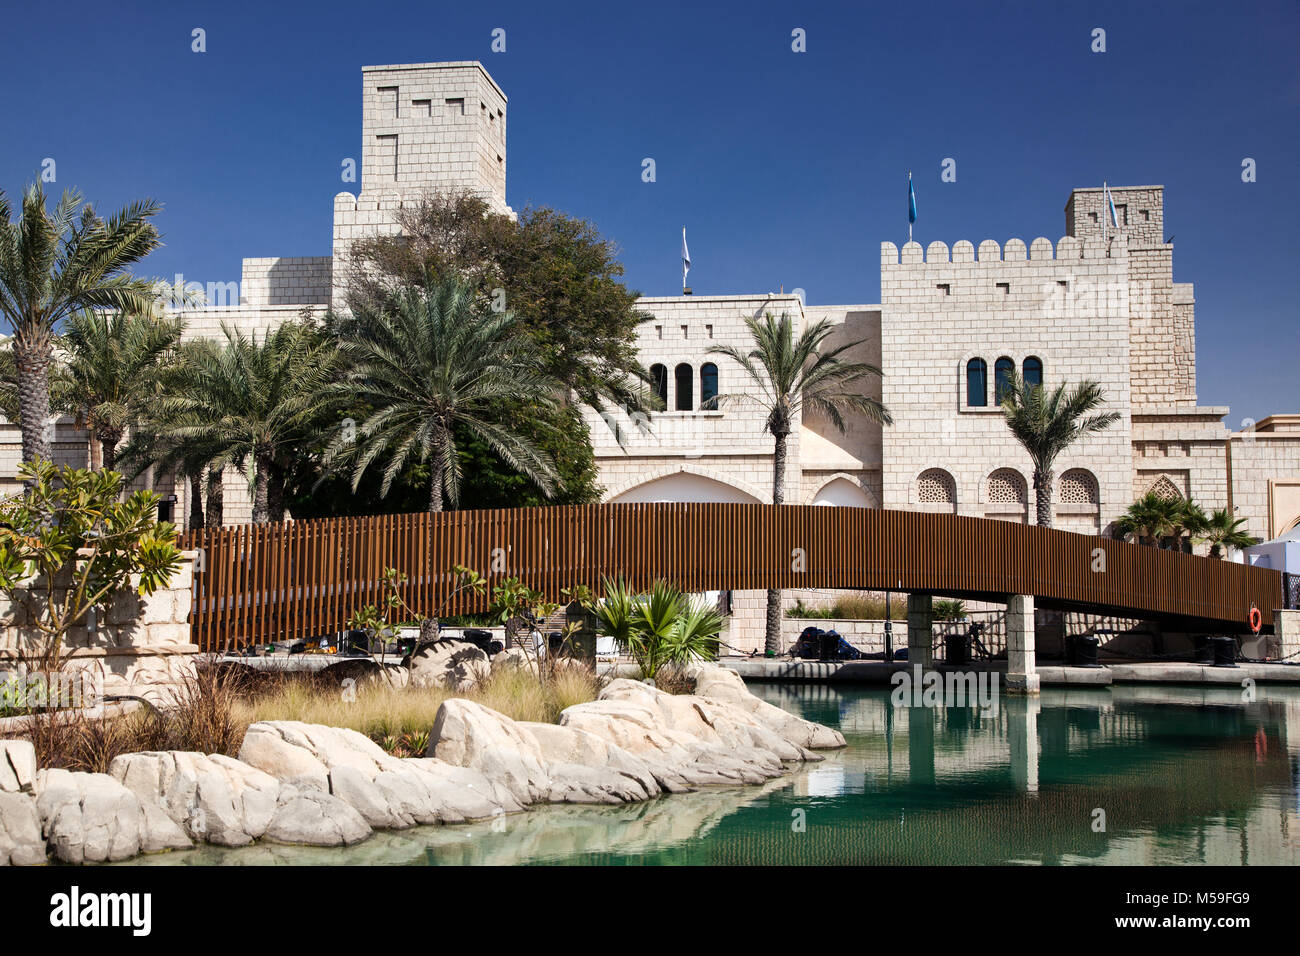 Dubaï, Émirats arabes unis - Février 2018 : vue sur le Souk Madinat Jumeirah. Madinat Jumeirah comprend deux hôtels et des clusters de 29 maisons arabes traditionnelles Banque D'Images